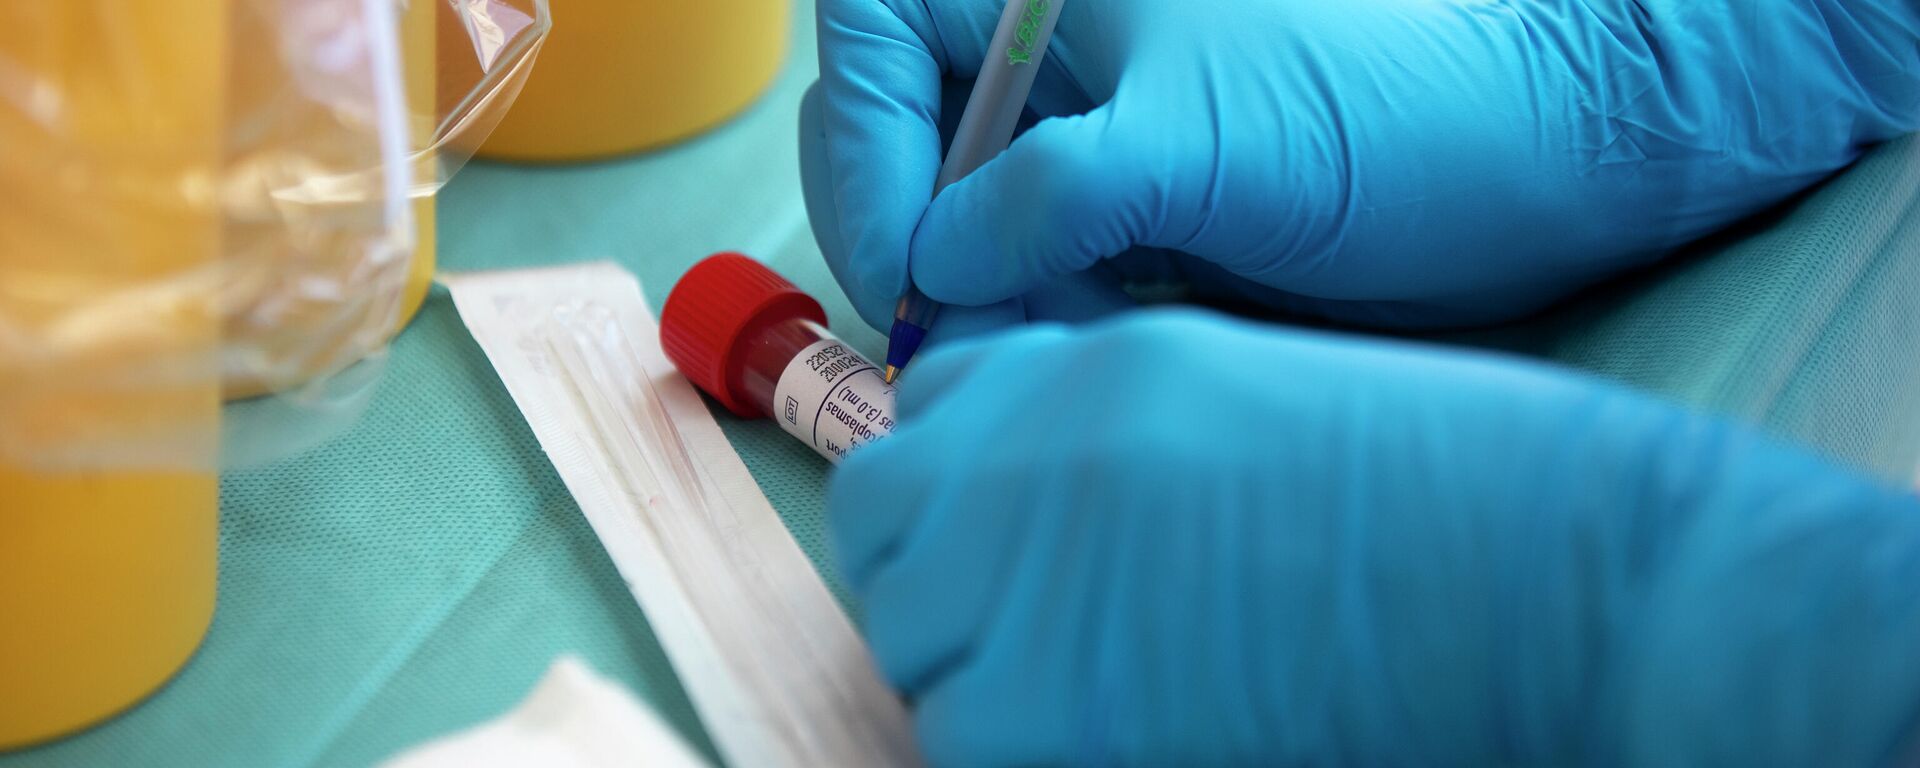 Un trabajador de la salud toma una muestra para una prueba de PCR para el coronavirus COVID-19 en un hospital en Coslada, España, el lunes 20 de abril de 2020. - Sputnik Mundo, 1920, 05.03.2021